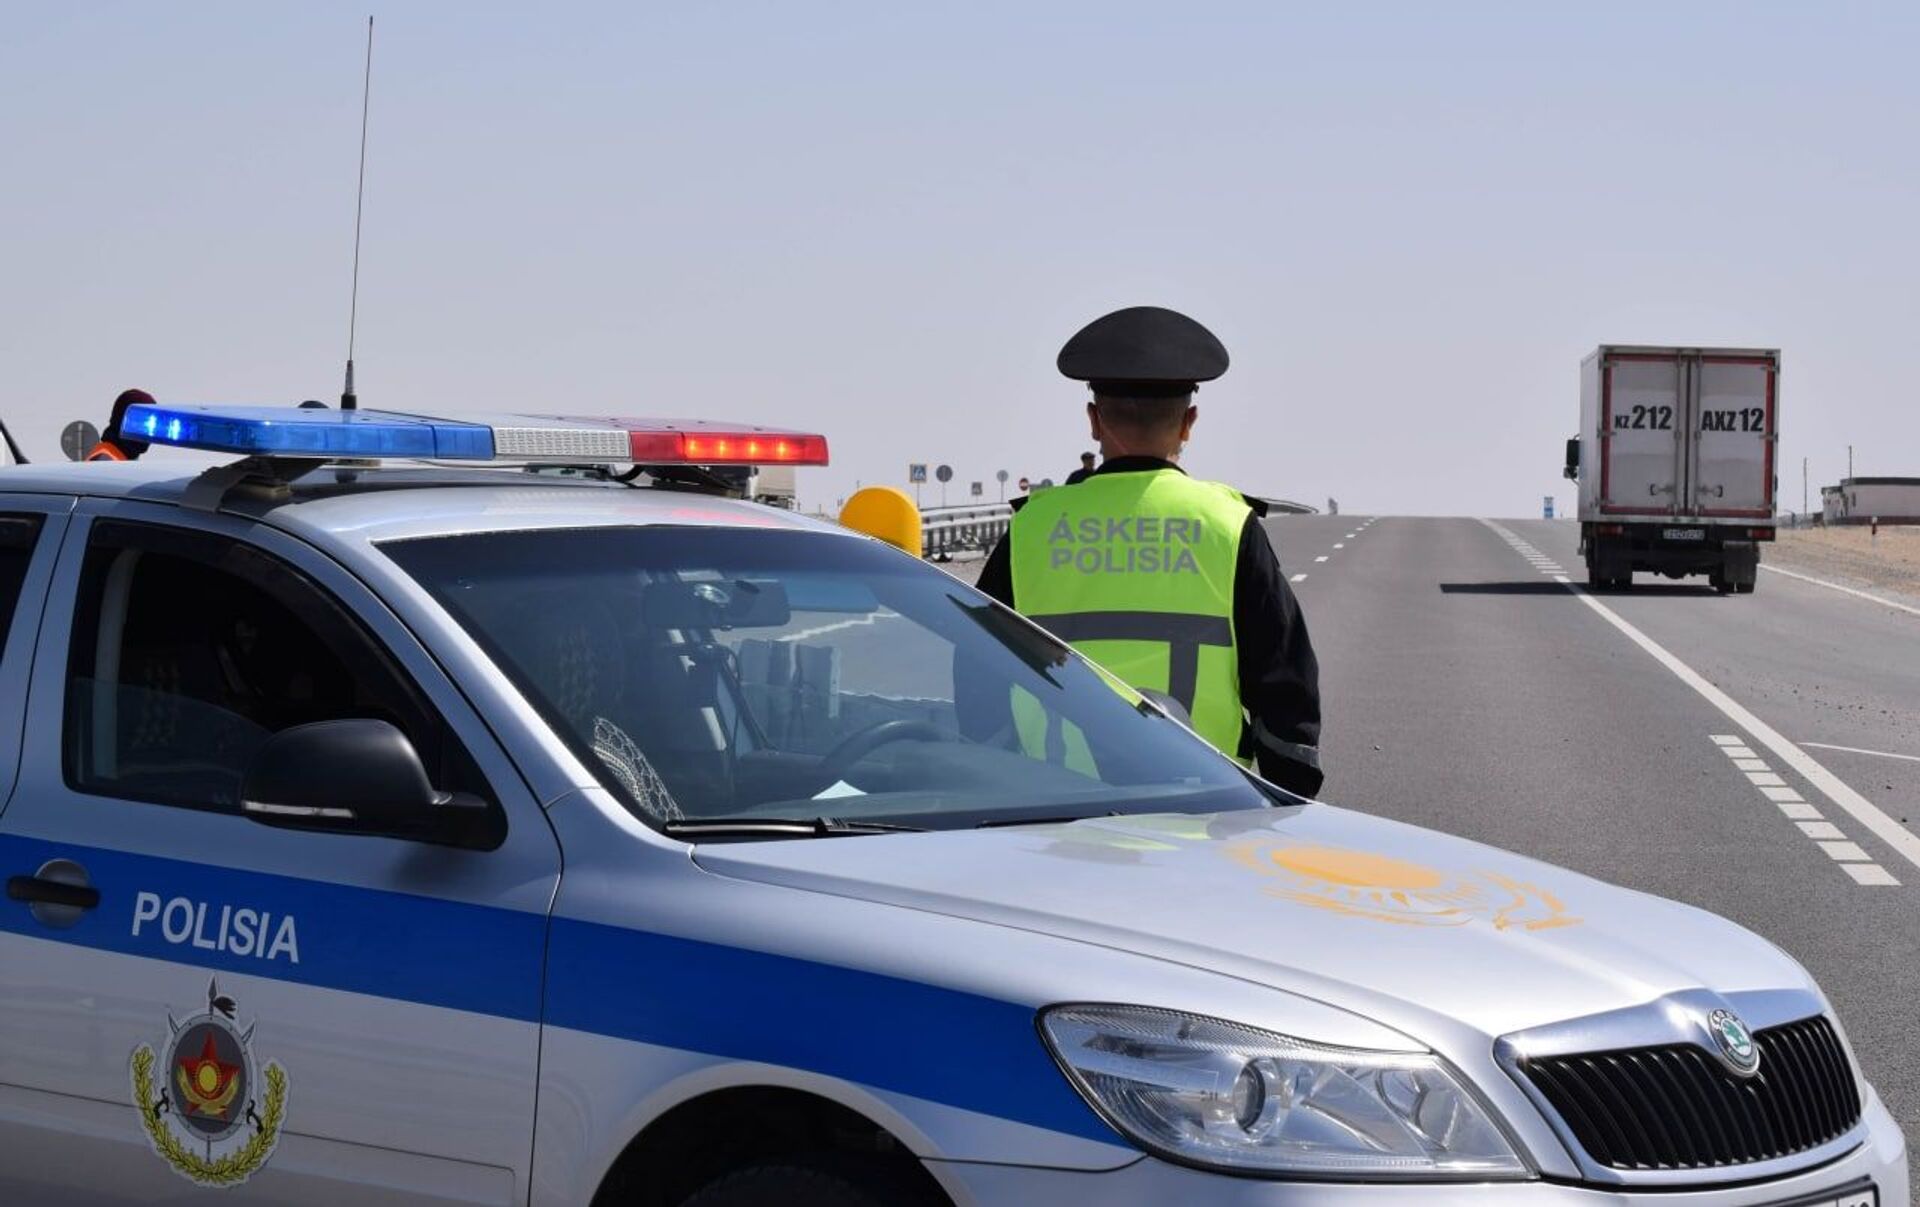 Астанада полиция көліктері сатылып жатыр (ВИДЕО)